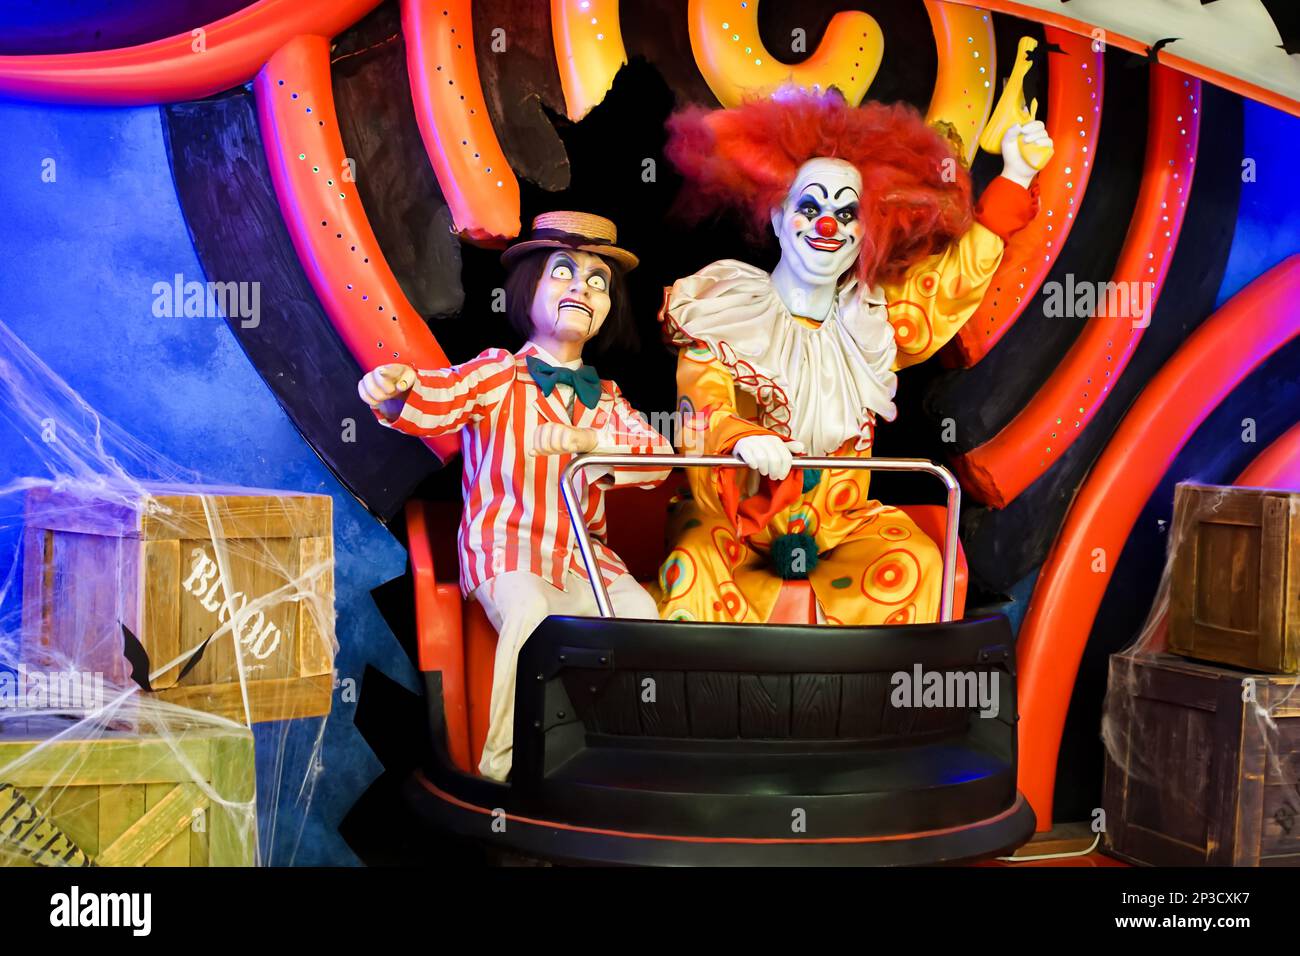 Deux poupées clown souriantes regardant dans la caméra avec un pistolet soulevé dans leur main. Photo de haute qualité Banque D'Images